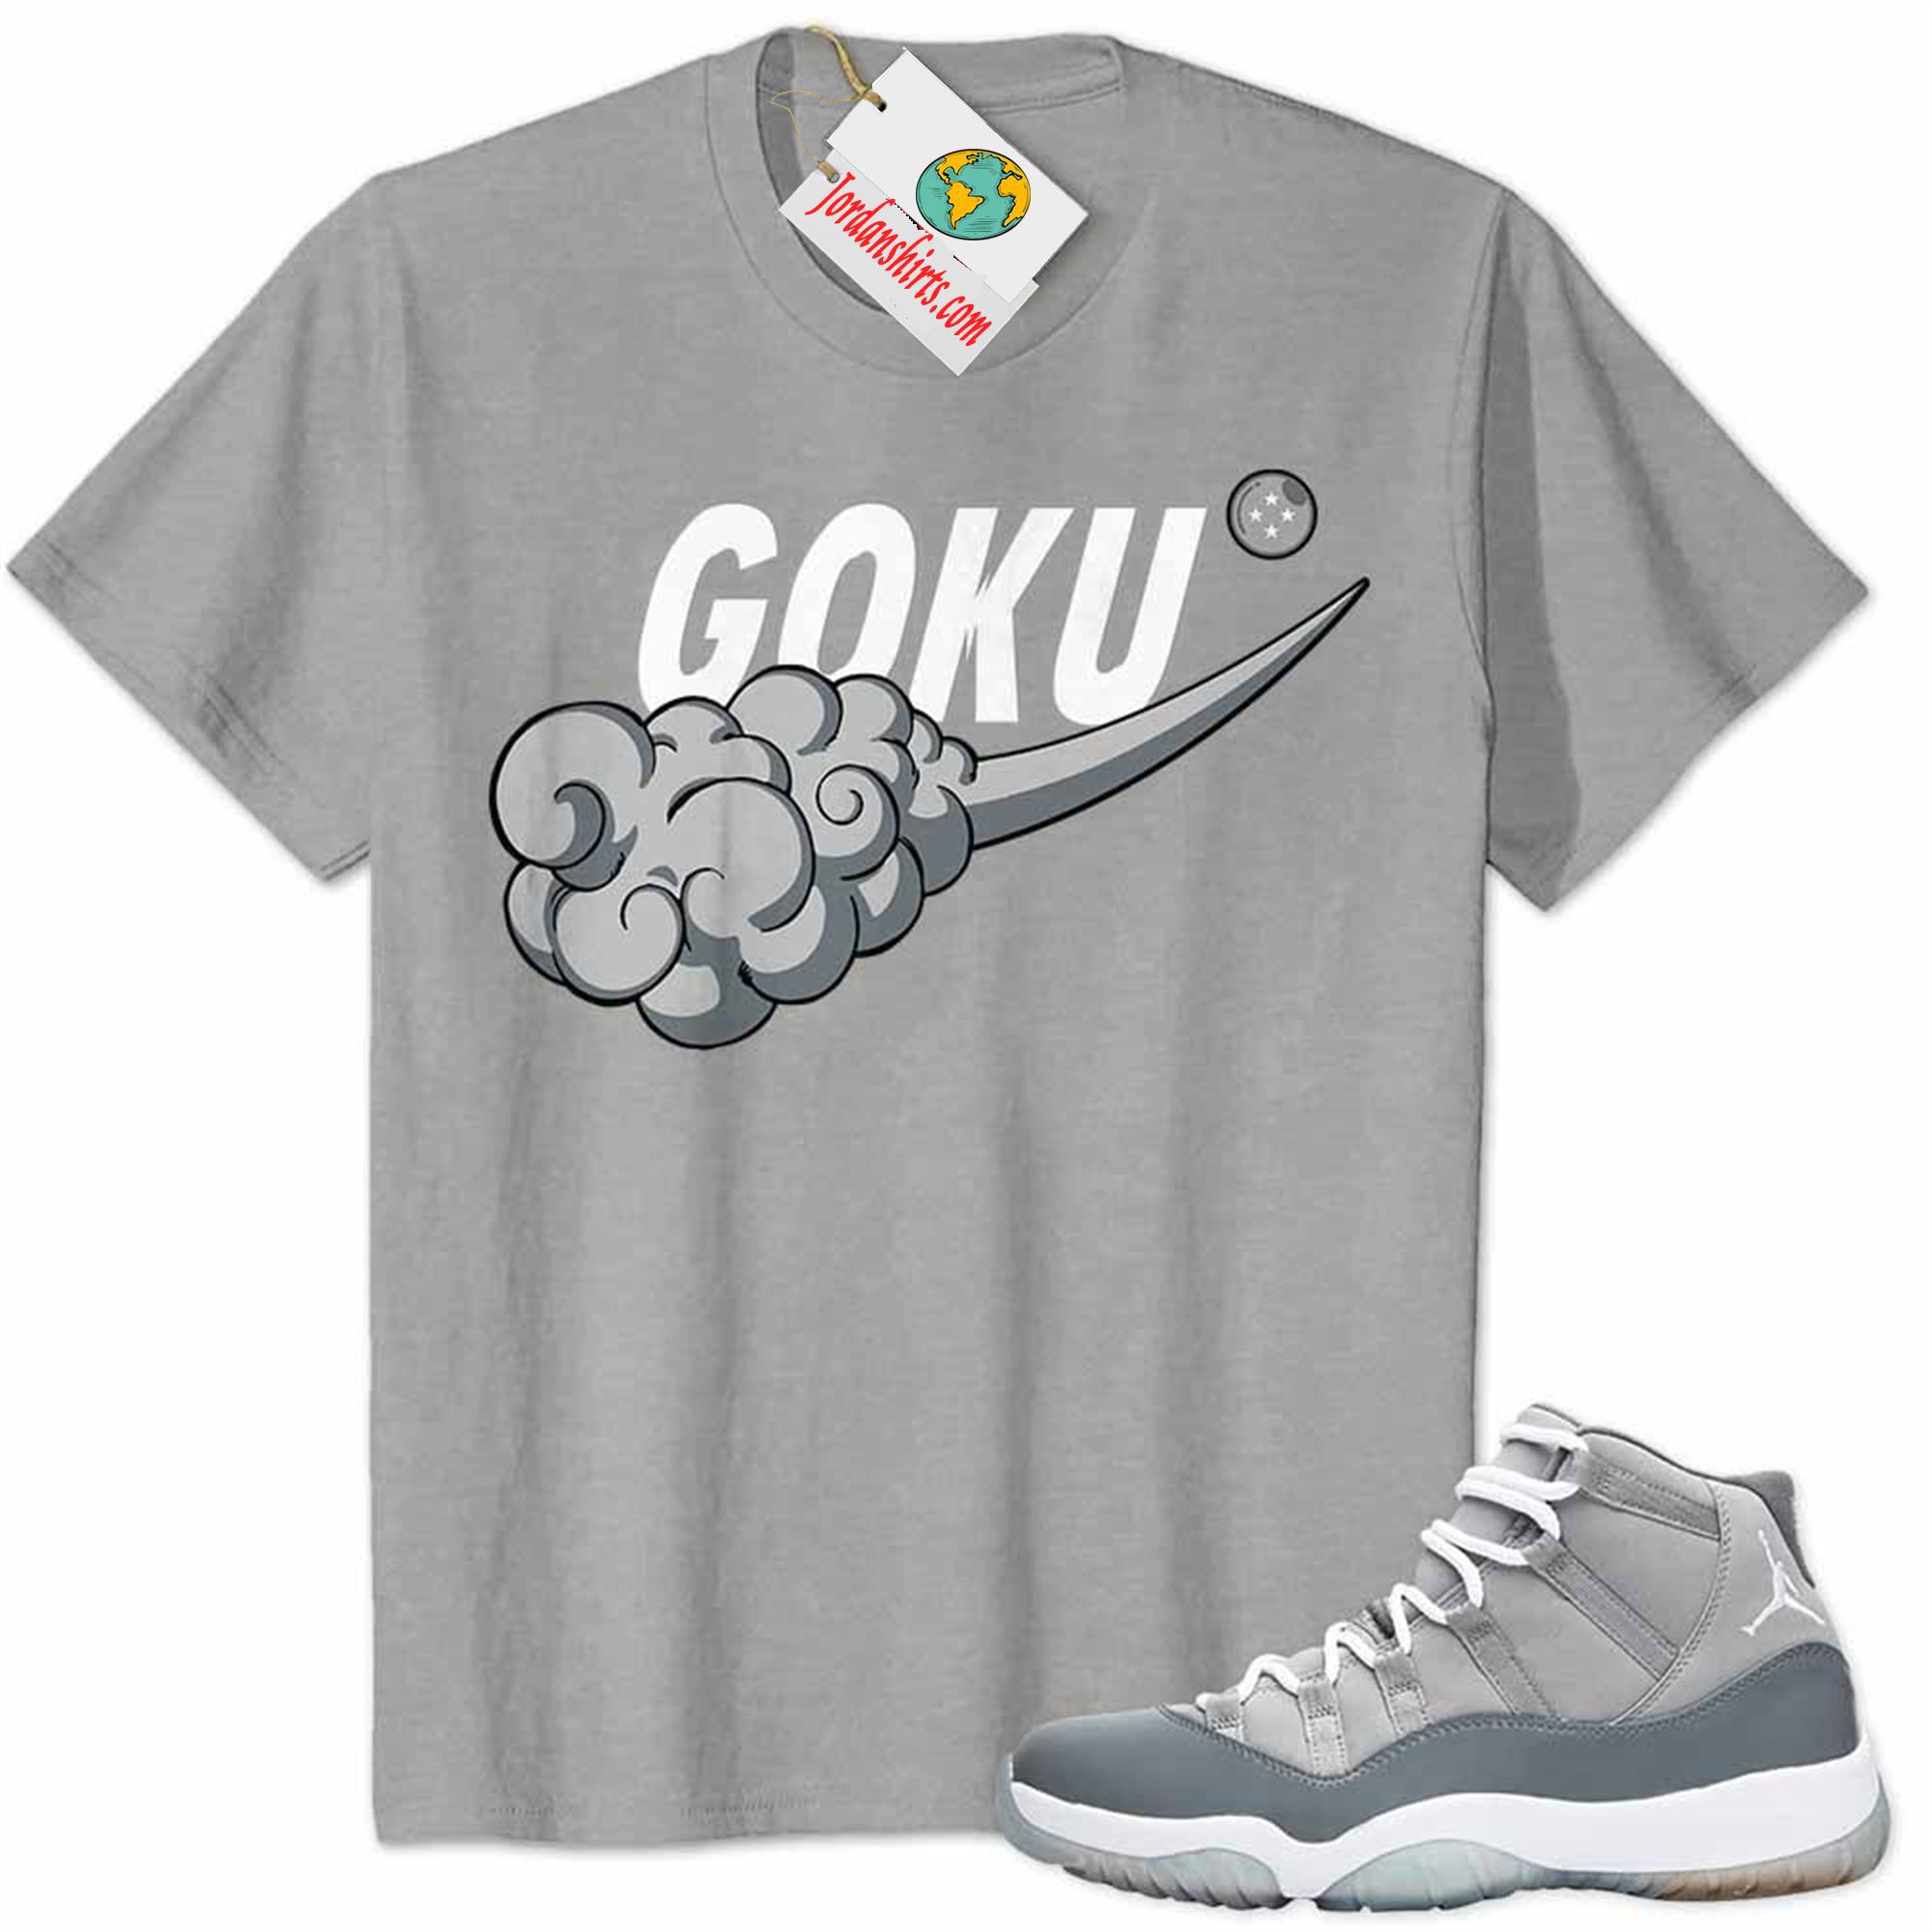 Jordan 11 Shirt, Dragonball Z Nike Goku Nimbus Cloud Grey Air Jordan 11 Cool Grey 11s Size Up To 5xl